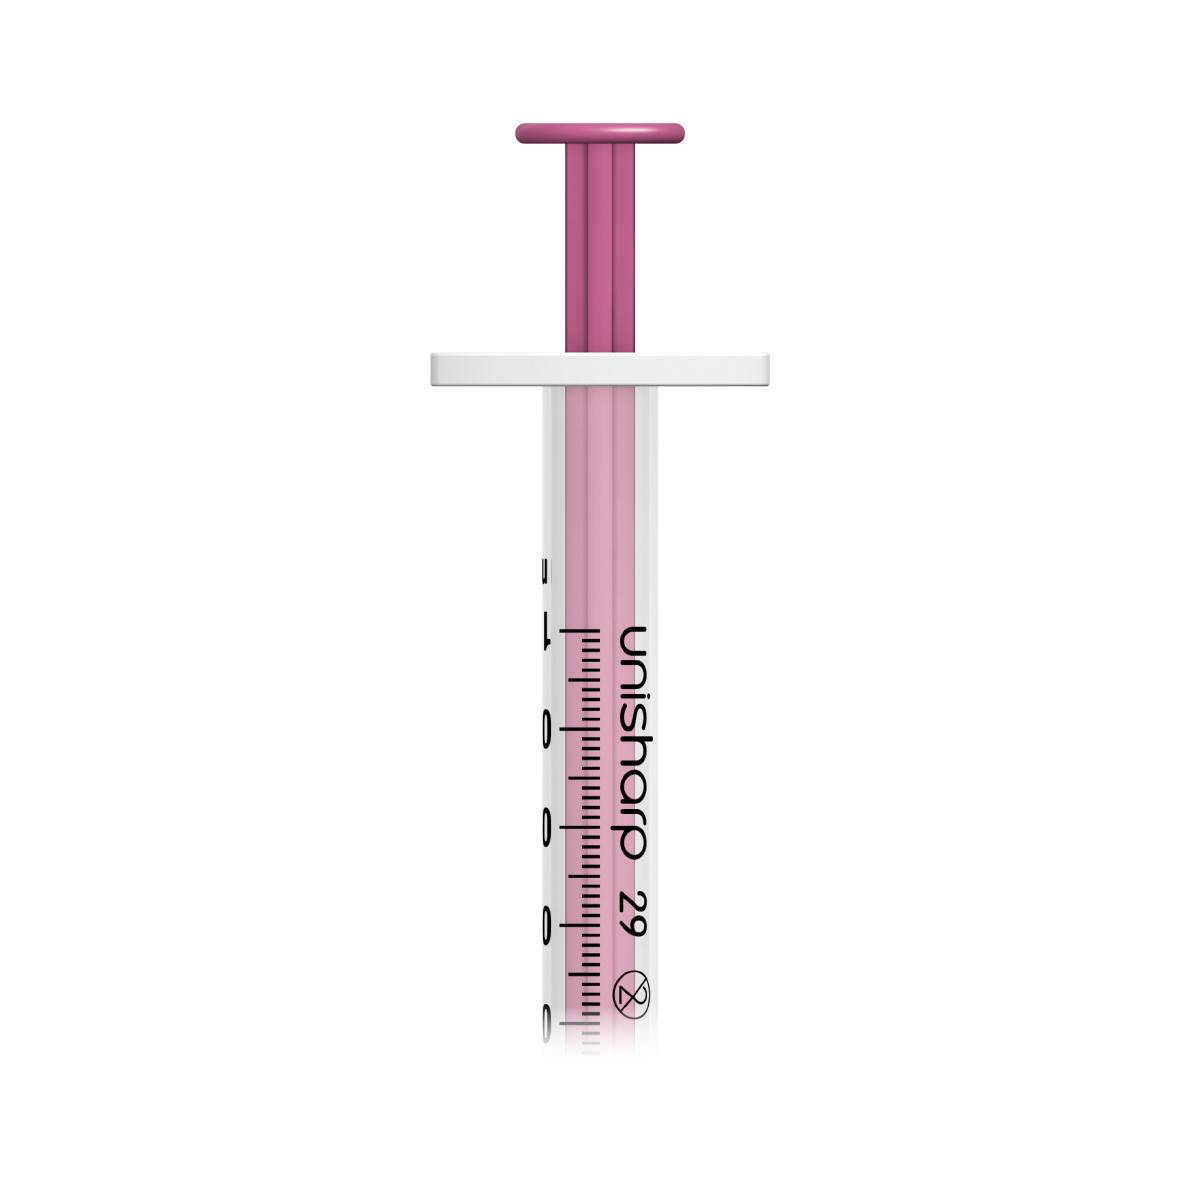 1ml 0.5 inch 29g Pink Unisharp Syringe and Needle u100